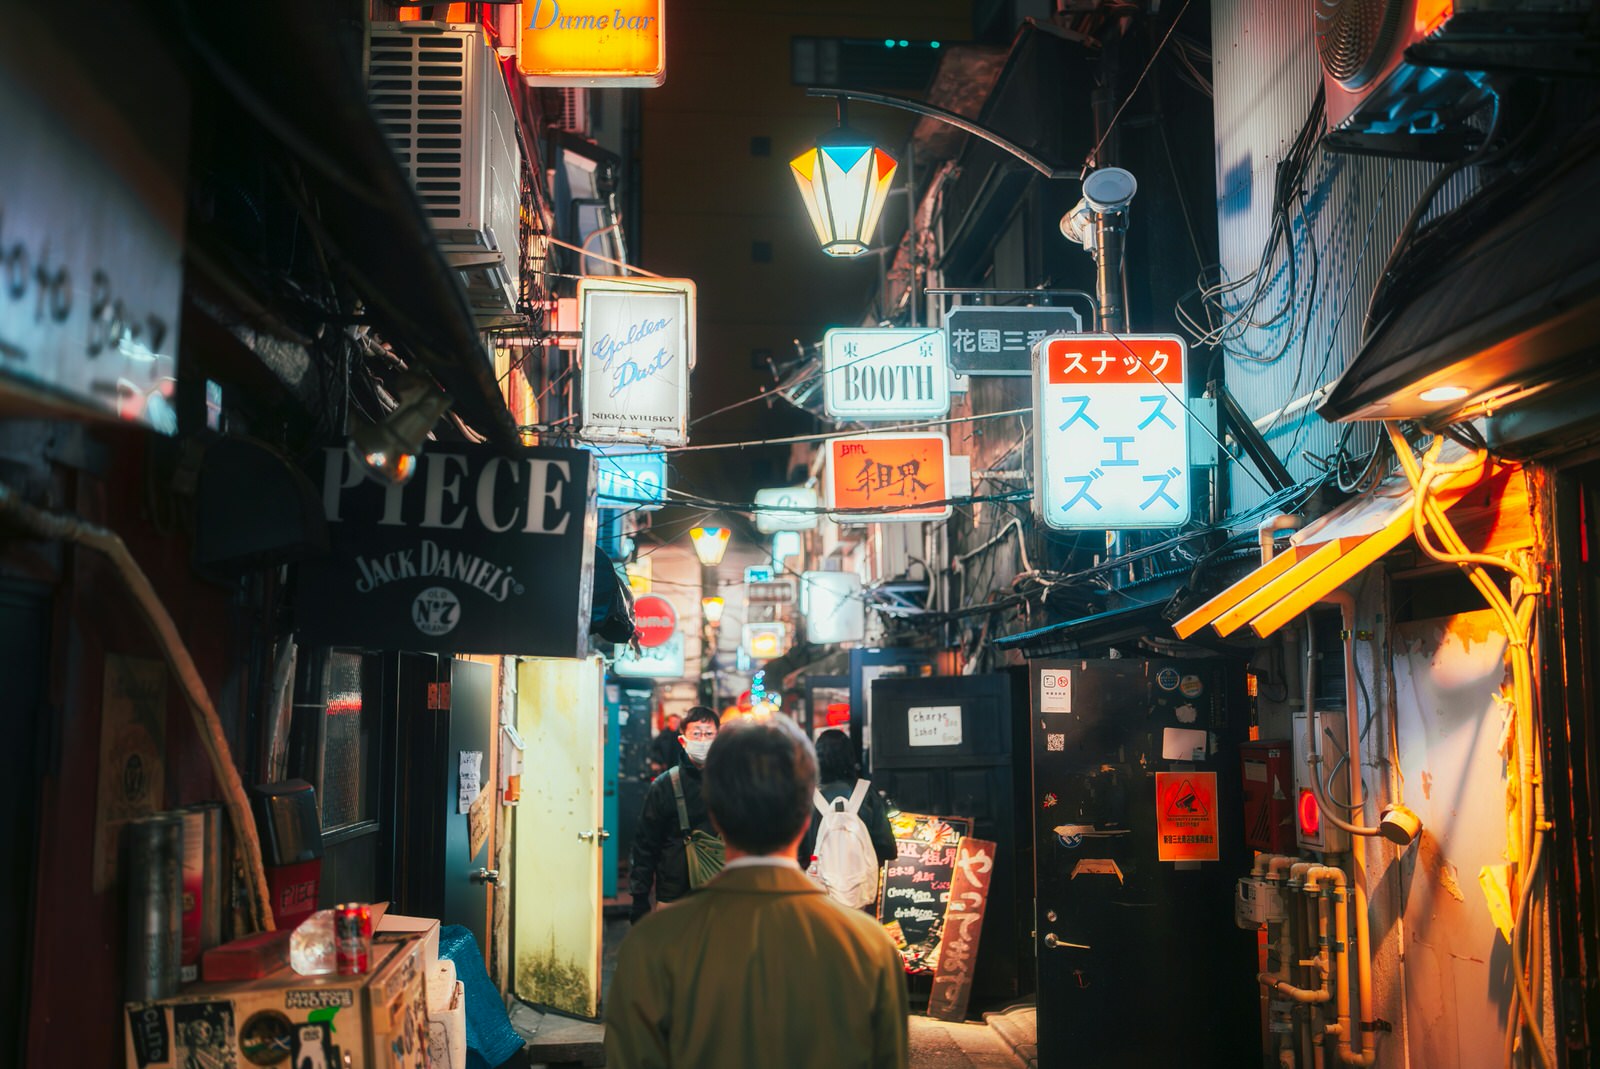 Un hombre observa un callejón de Shinjuku con carteles en varios idiomas.